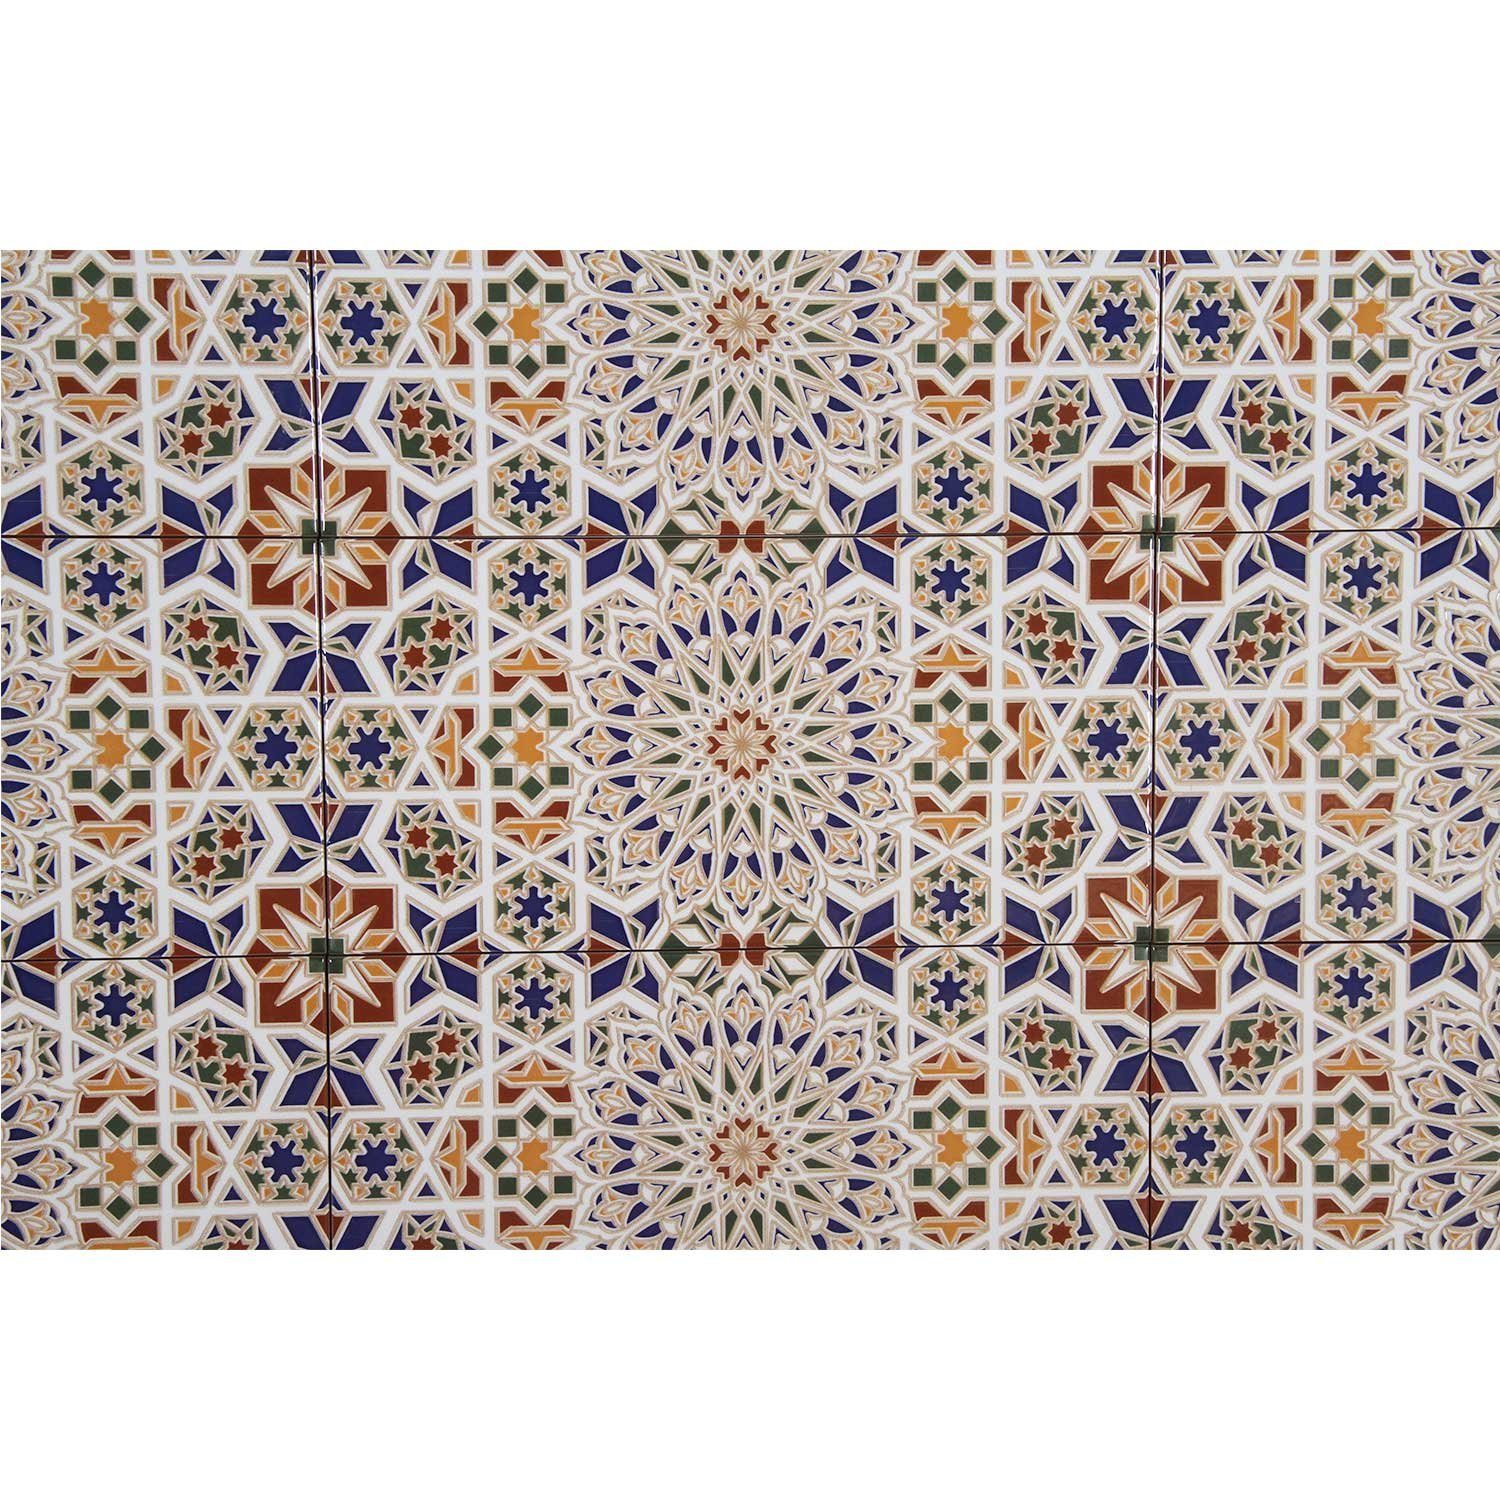 FL2090 schöne Rabab mit Wandfliese Fliesen Steinzeug Orientalische Küche Moro Casa bunt, Keramikfliesen 30x15 endlos Marokkanische Badezimmer, Wandfliesen, cm Muster, für